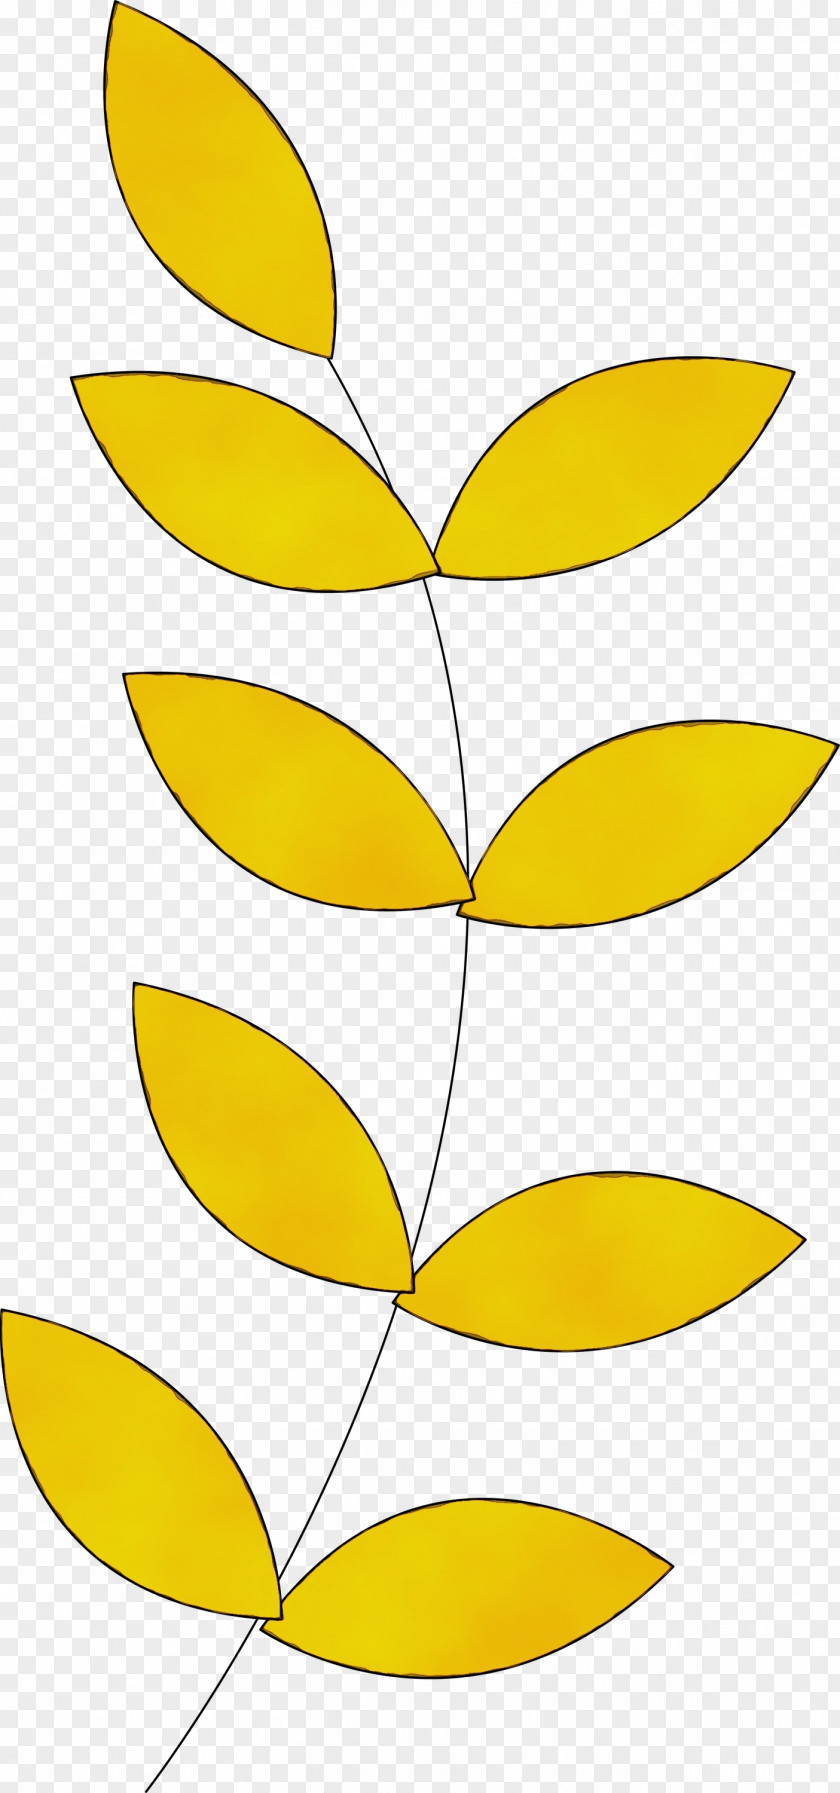 Plant Stem Petal Line Art Leaf Angle PNG